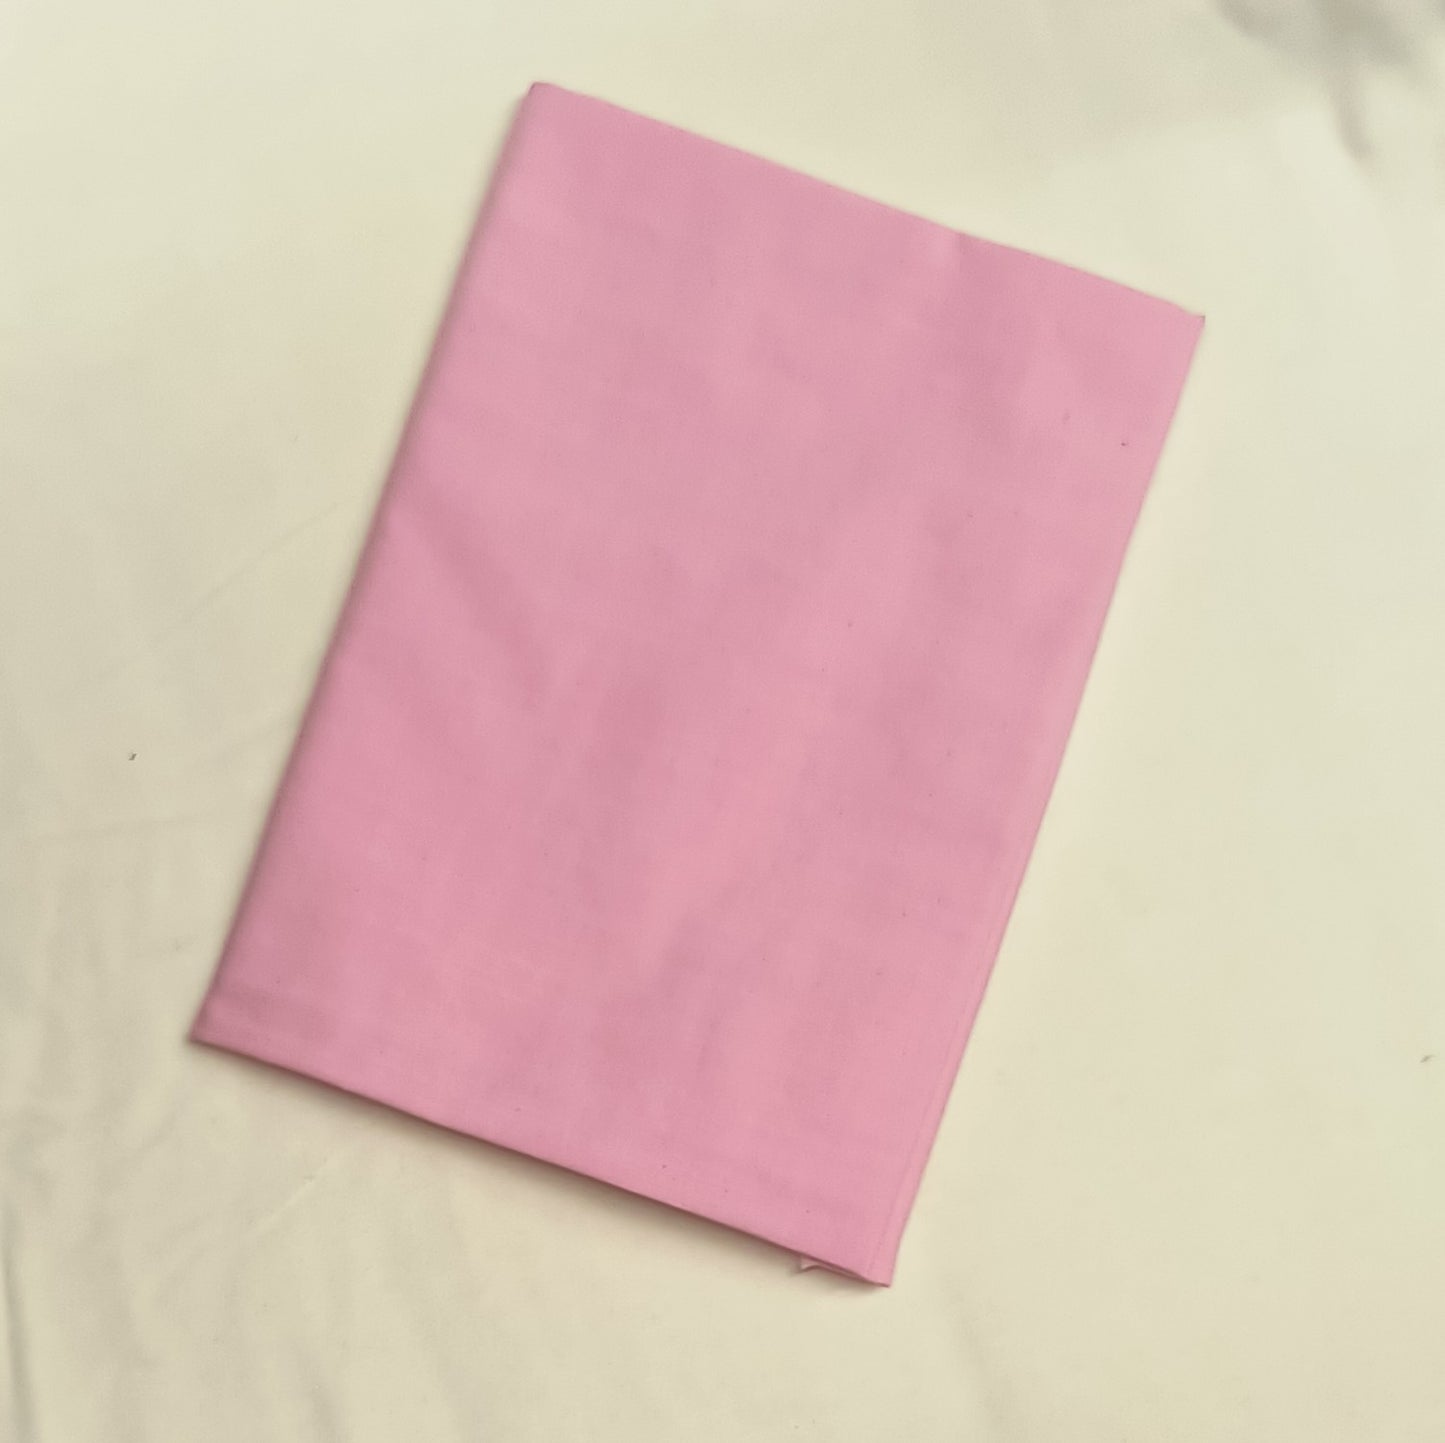 Weavers Cloth - Sophia's Pink